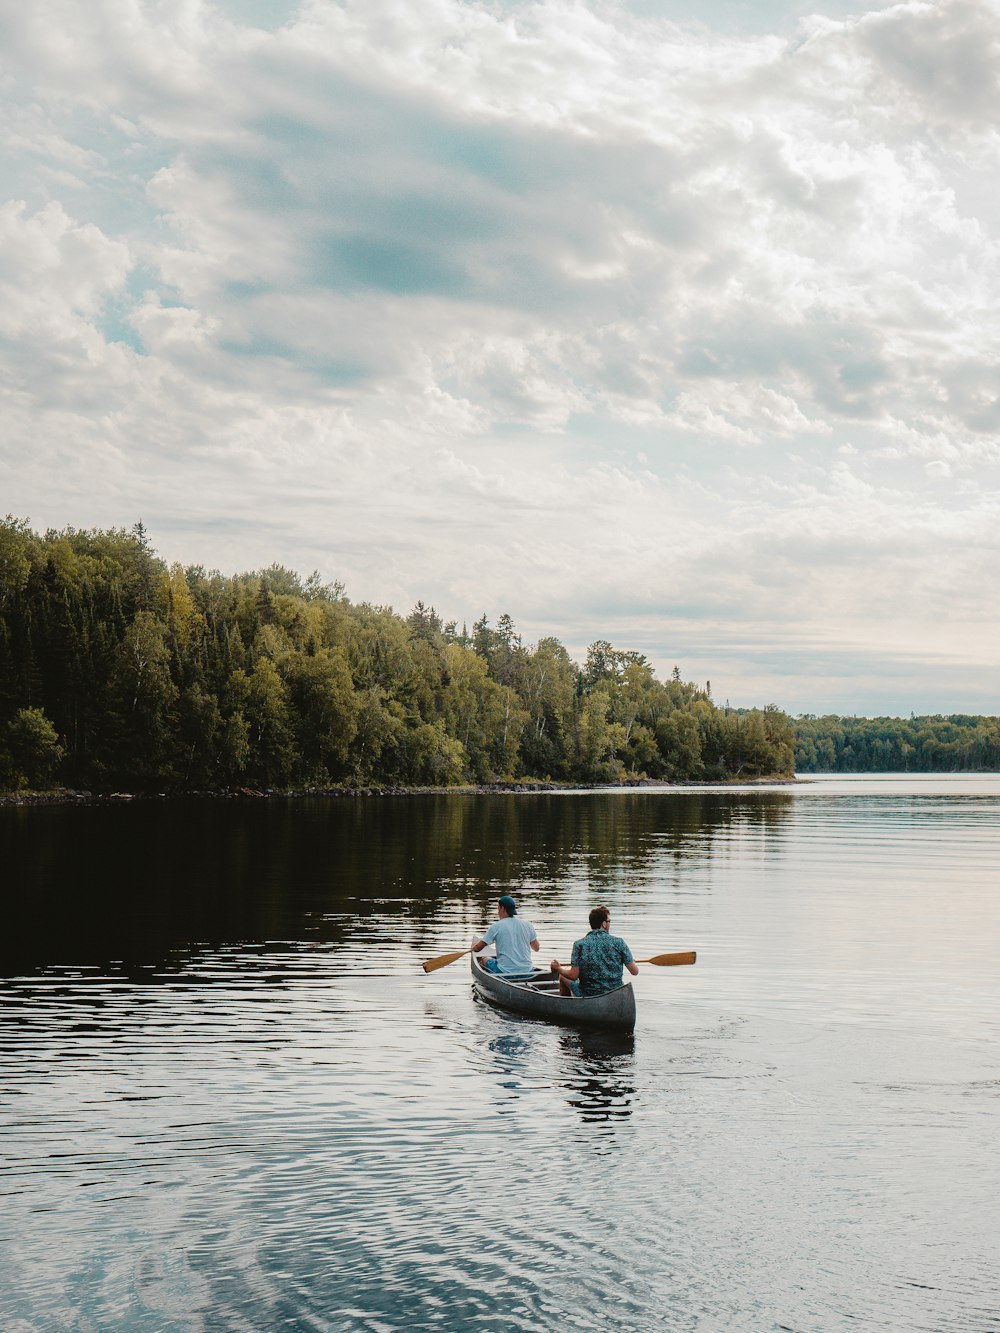 Uomo che cavalca sul kayak blu sul lago durante il giorno